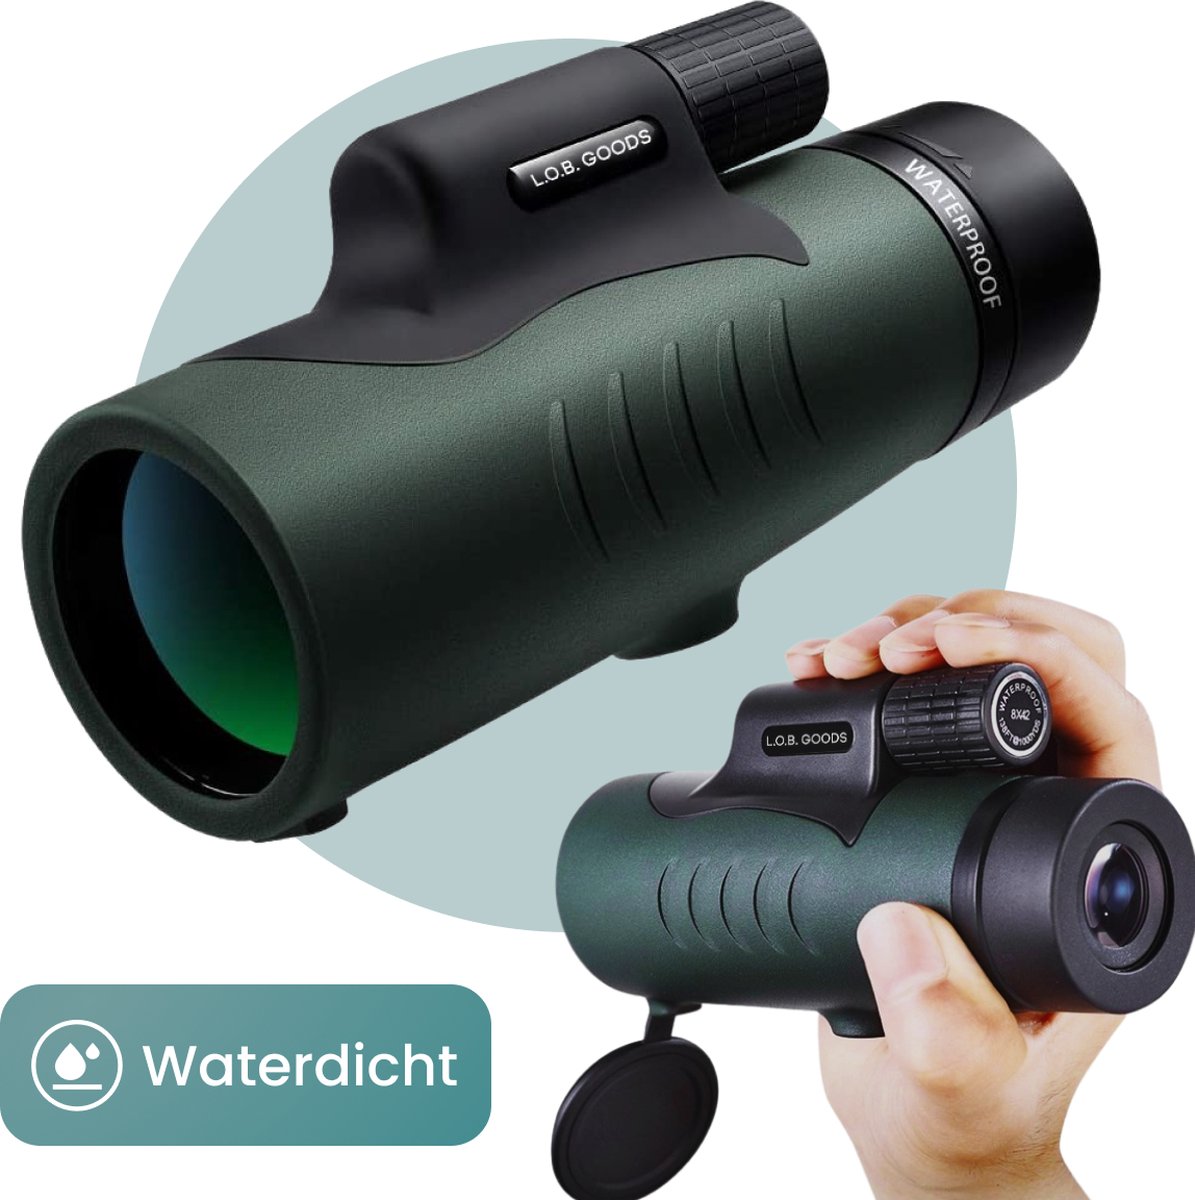 Luxe Monokijker Groen 12x50 - Monoculair Verrekijker - Vogelkijker - Spotting Scope - Telefoonhouder - Opberghoes - Handriem - Compact & licht